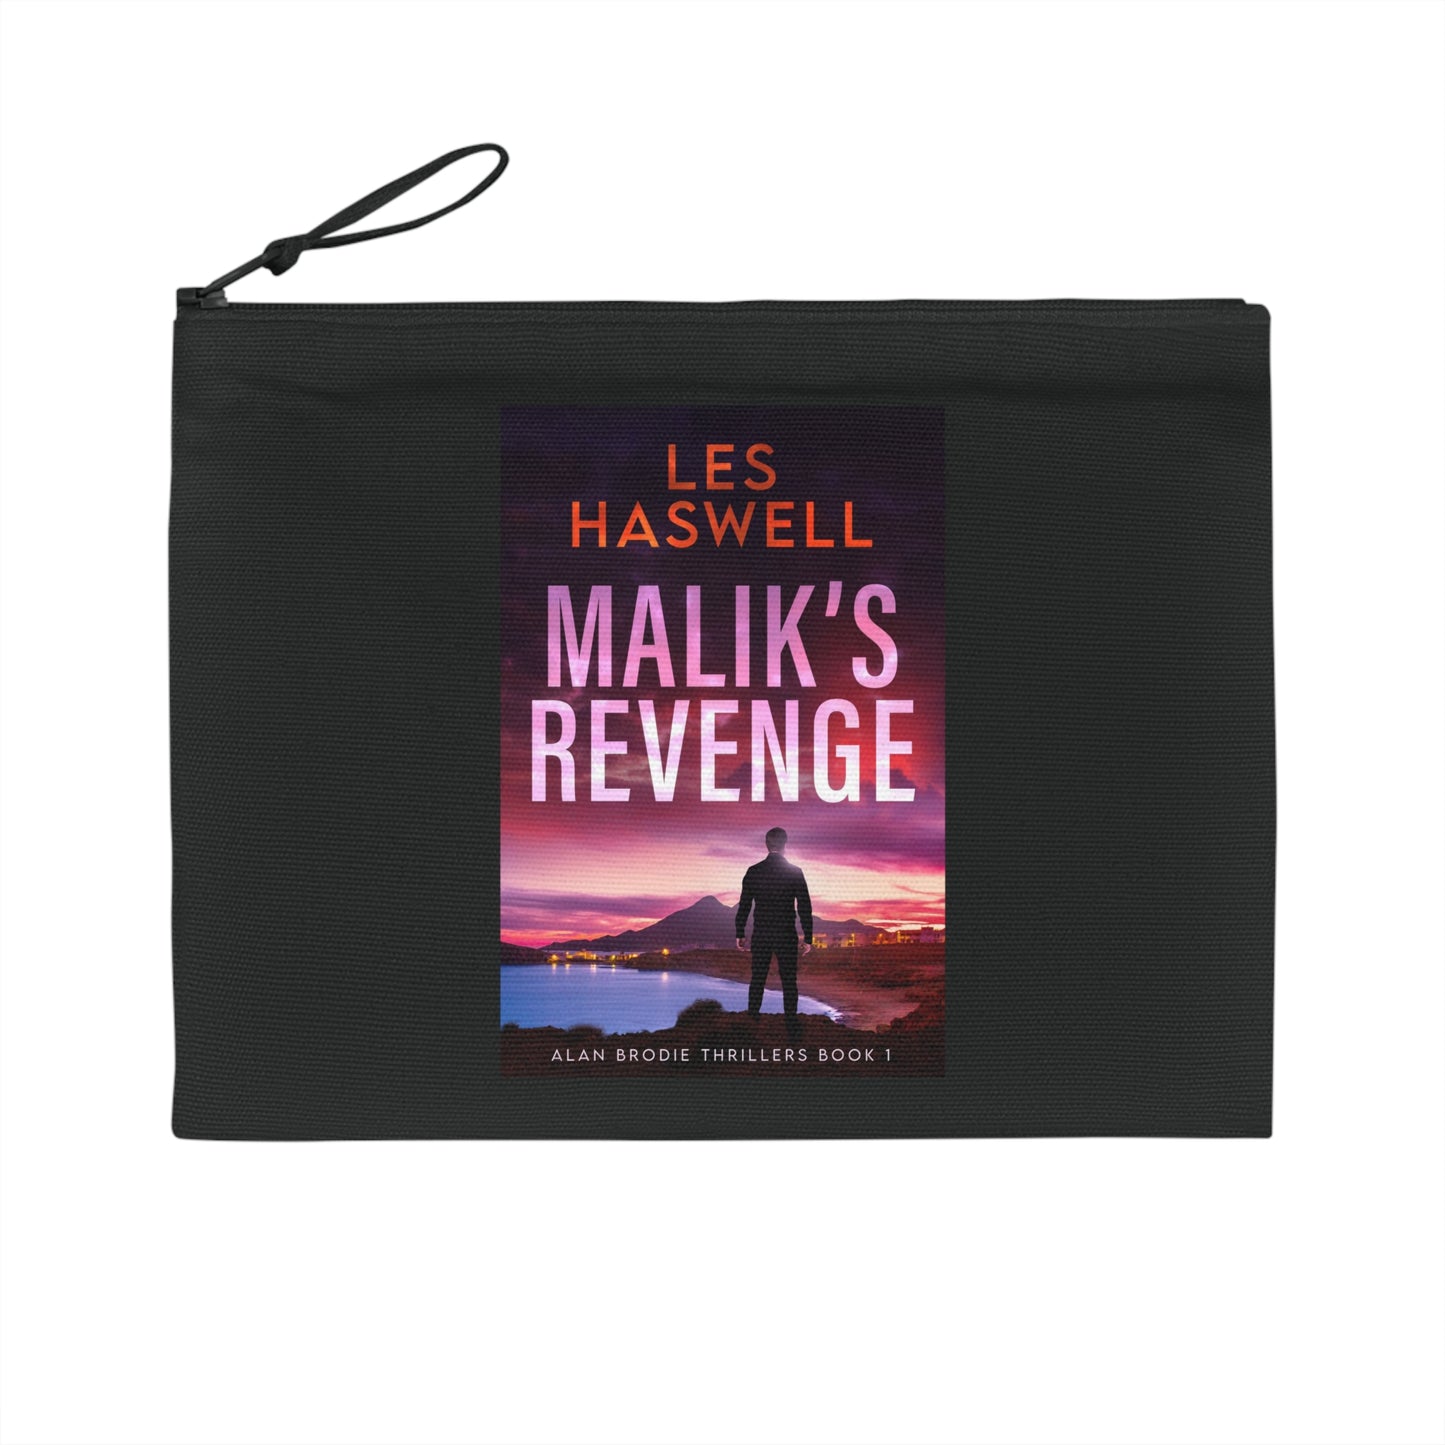 Malik's Revenge - Pencil Case